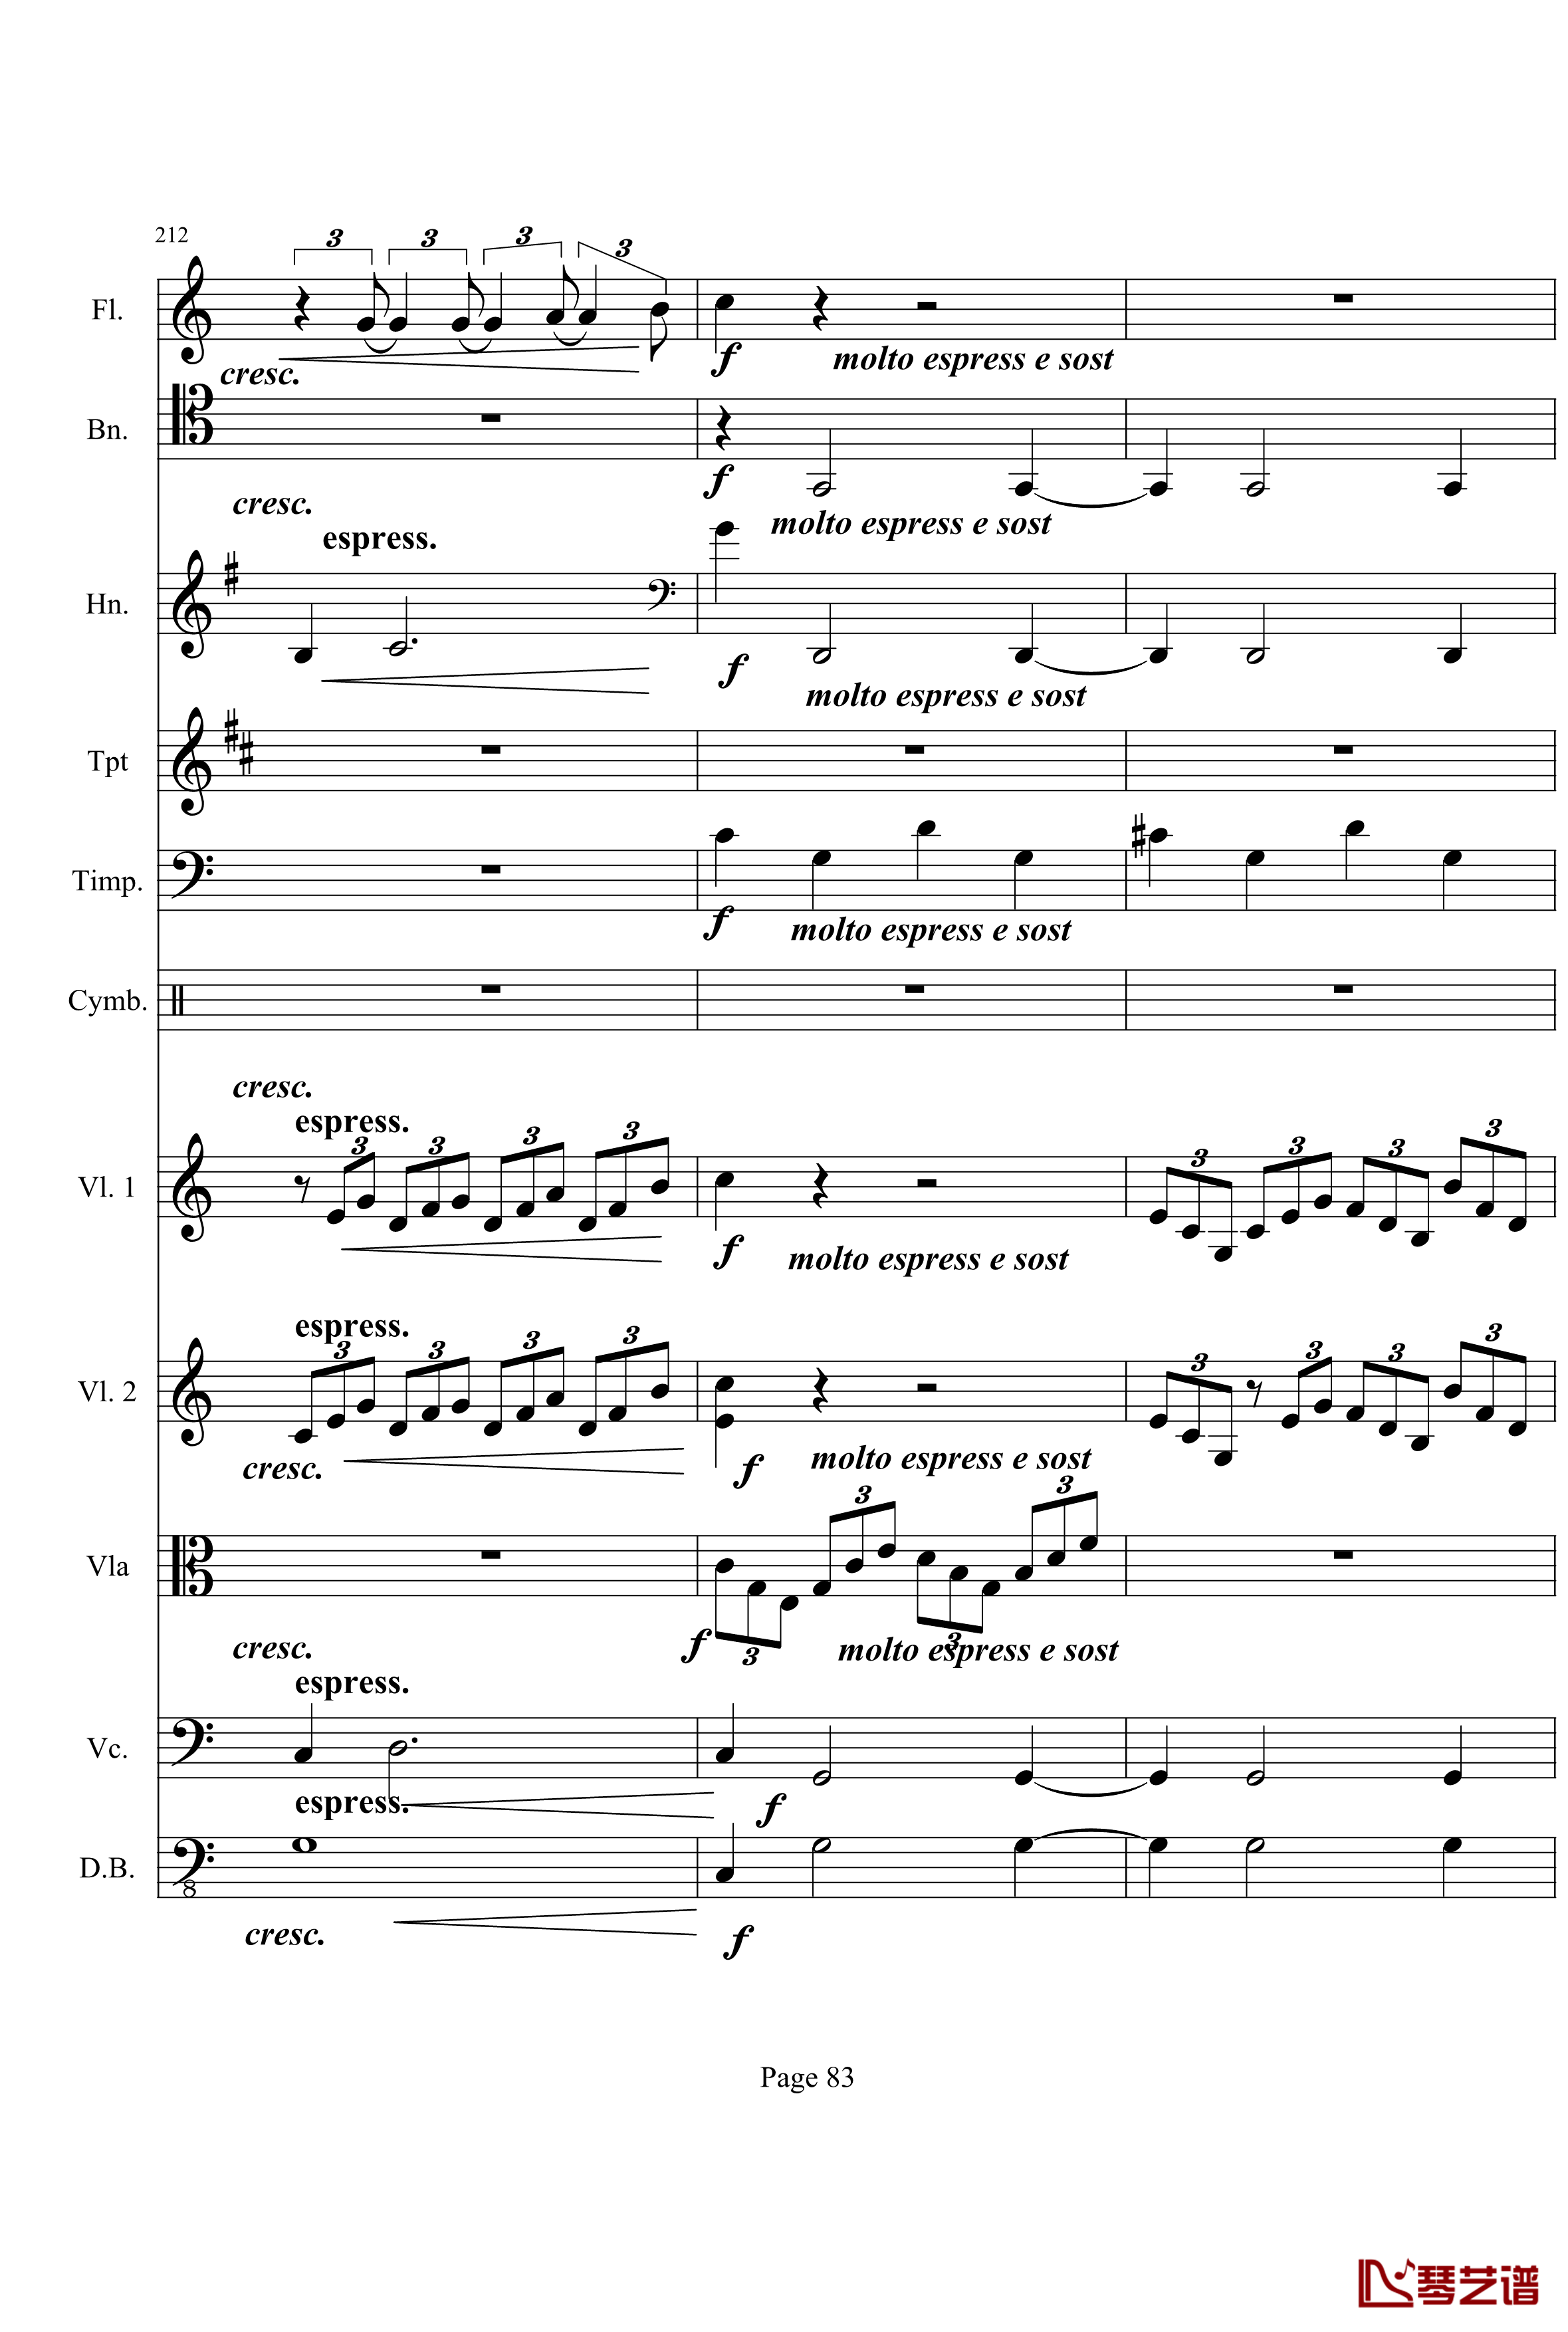 奏鸣曲之交响钢琴谱-第21首-Ⅰ-贝多芬-beethoven83